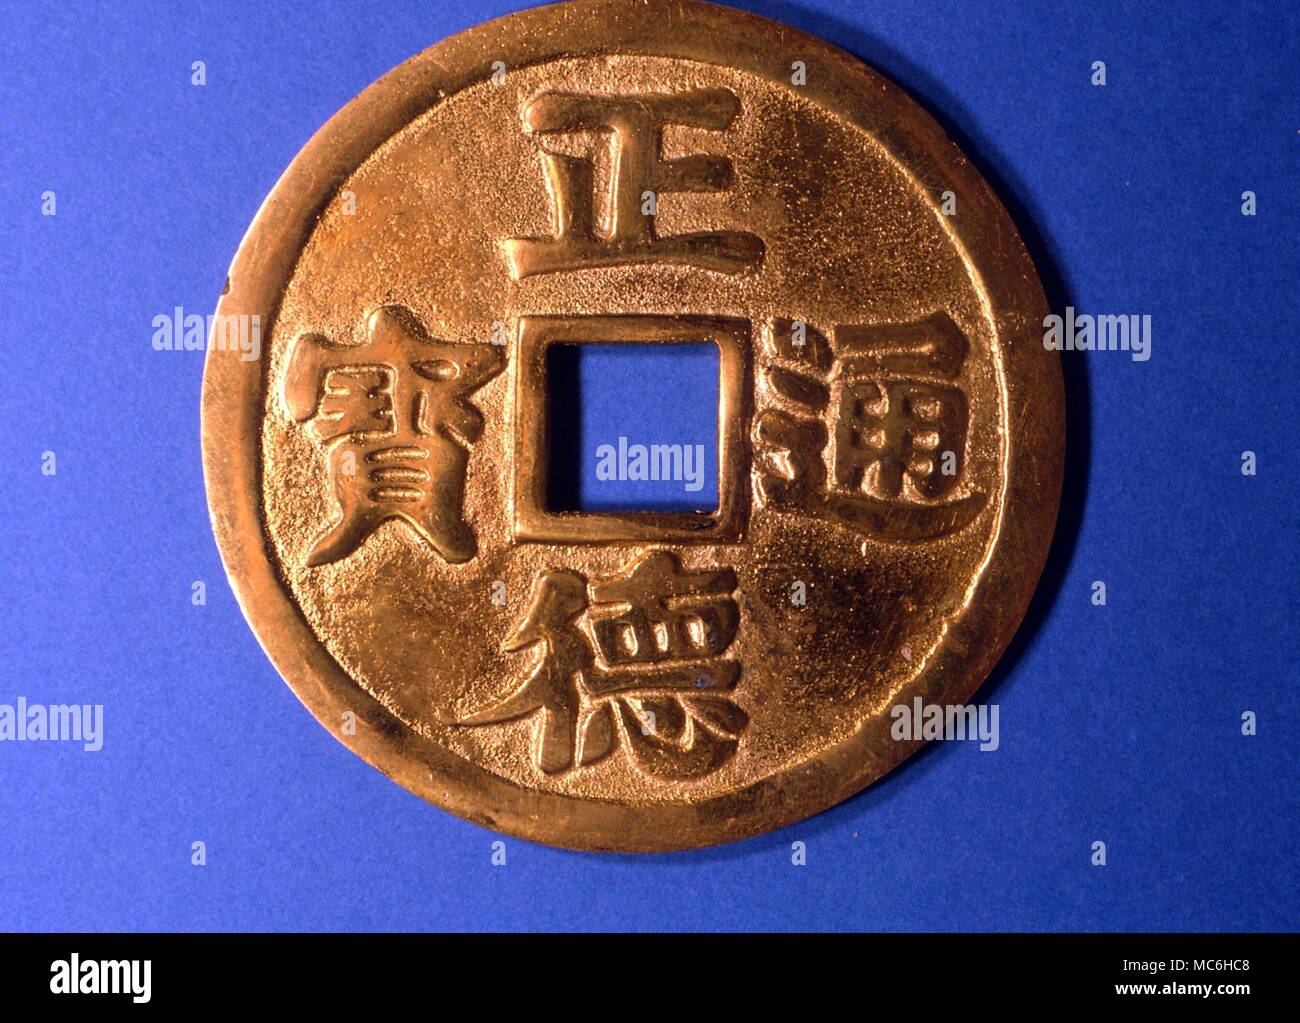 Mitologia cinese - bronzo - amuleto utilizzato per invocare la buona fortuna. Questi amuleti sono appese le camere upin, spesso al di sopra o in prossimità di porte Foto Stock